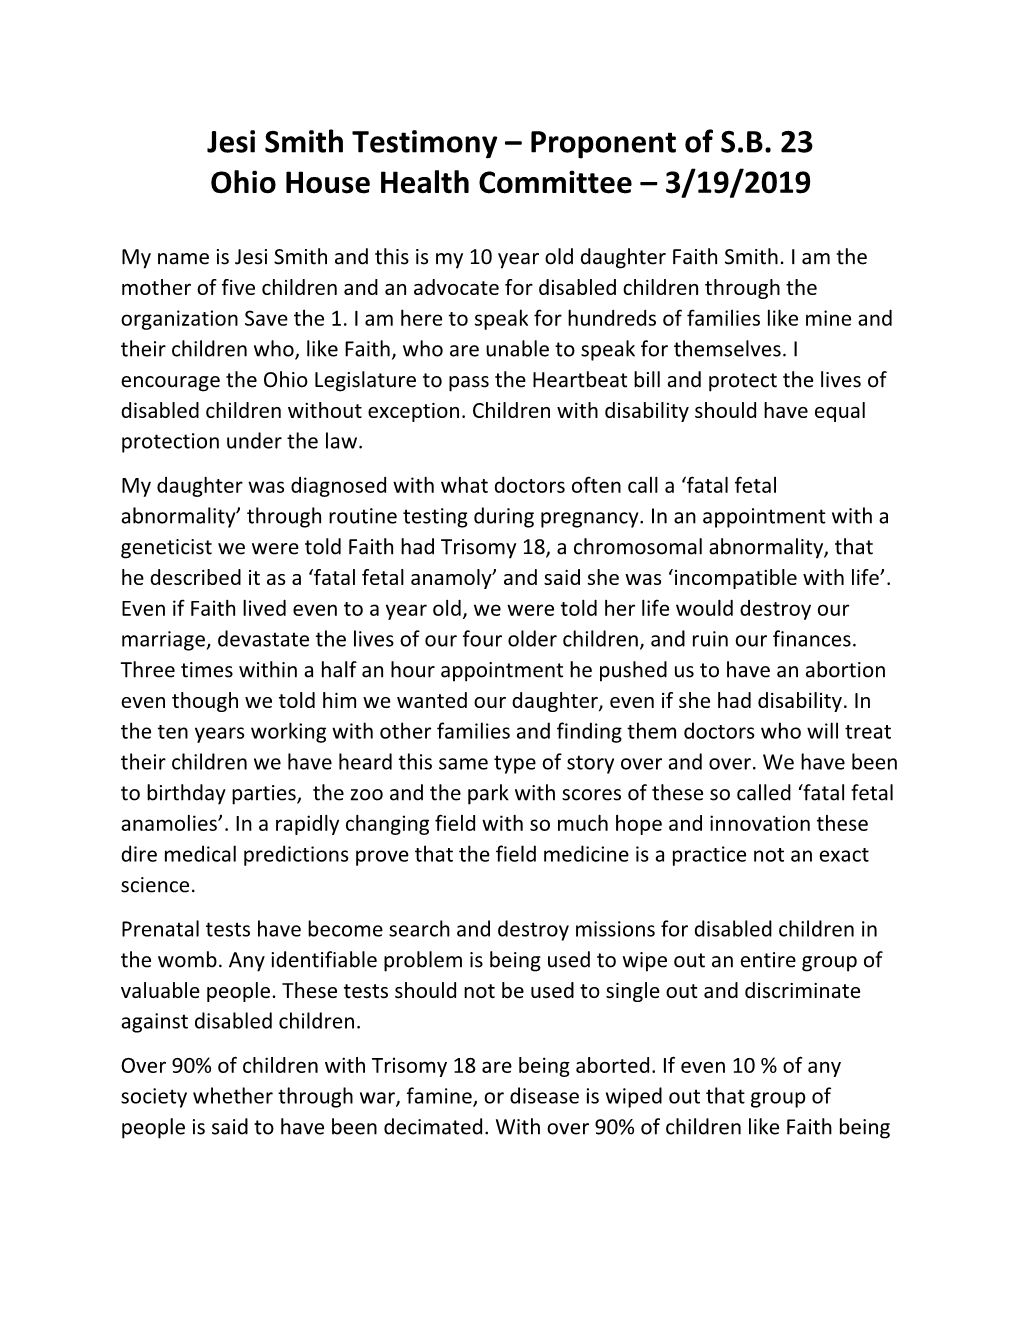 Jesi Smith Testimony – Proponent of S.B. 23 Ohio House Health Committee – 3/19/2019